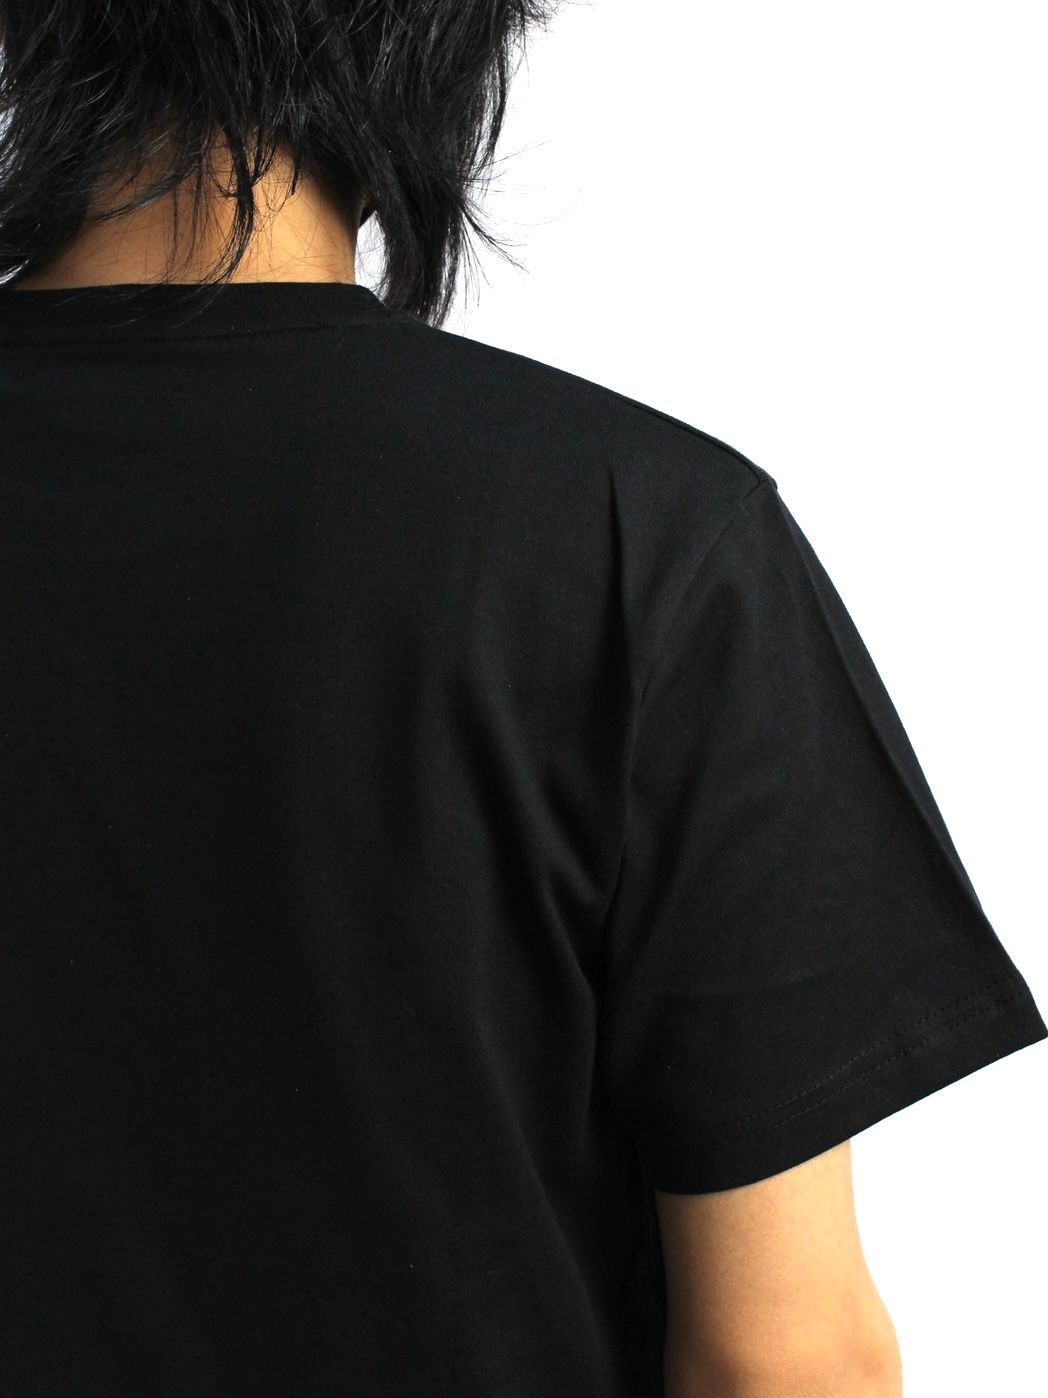 ワンポイント タグ Tシャツ / BASIC TAG TEE / ブラック - S - ブラック